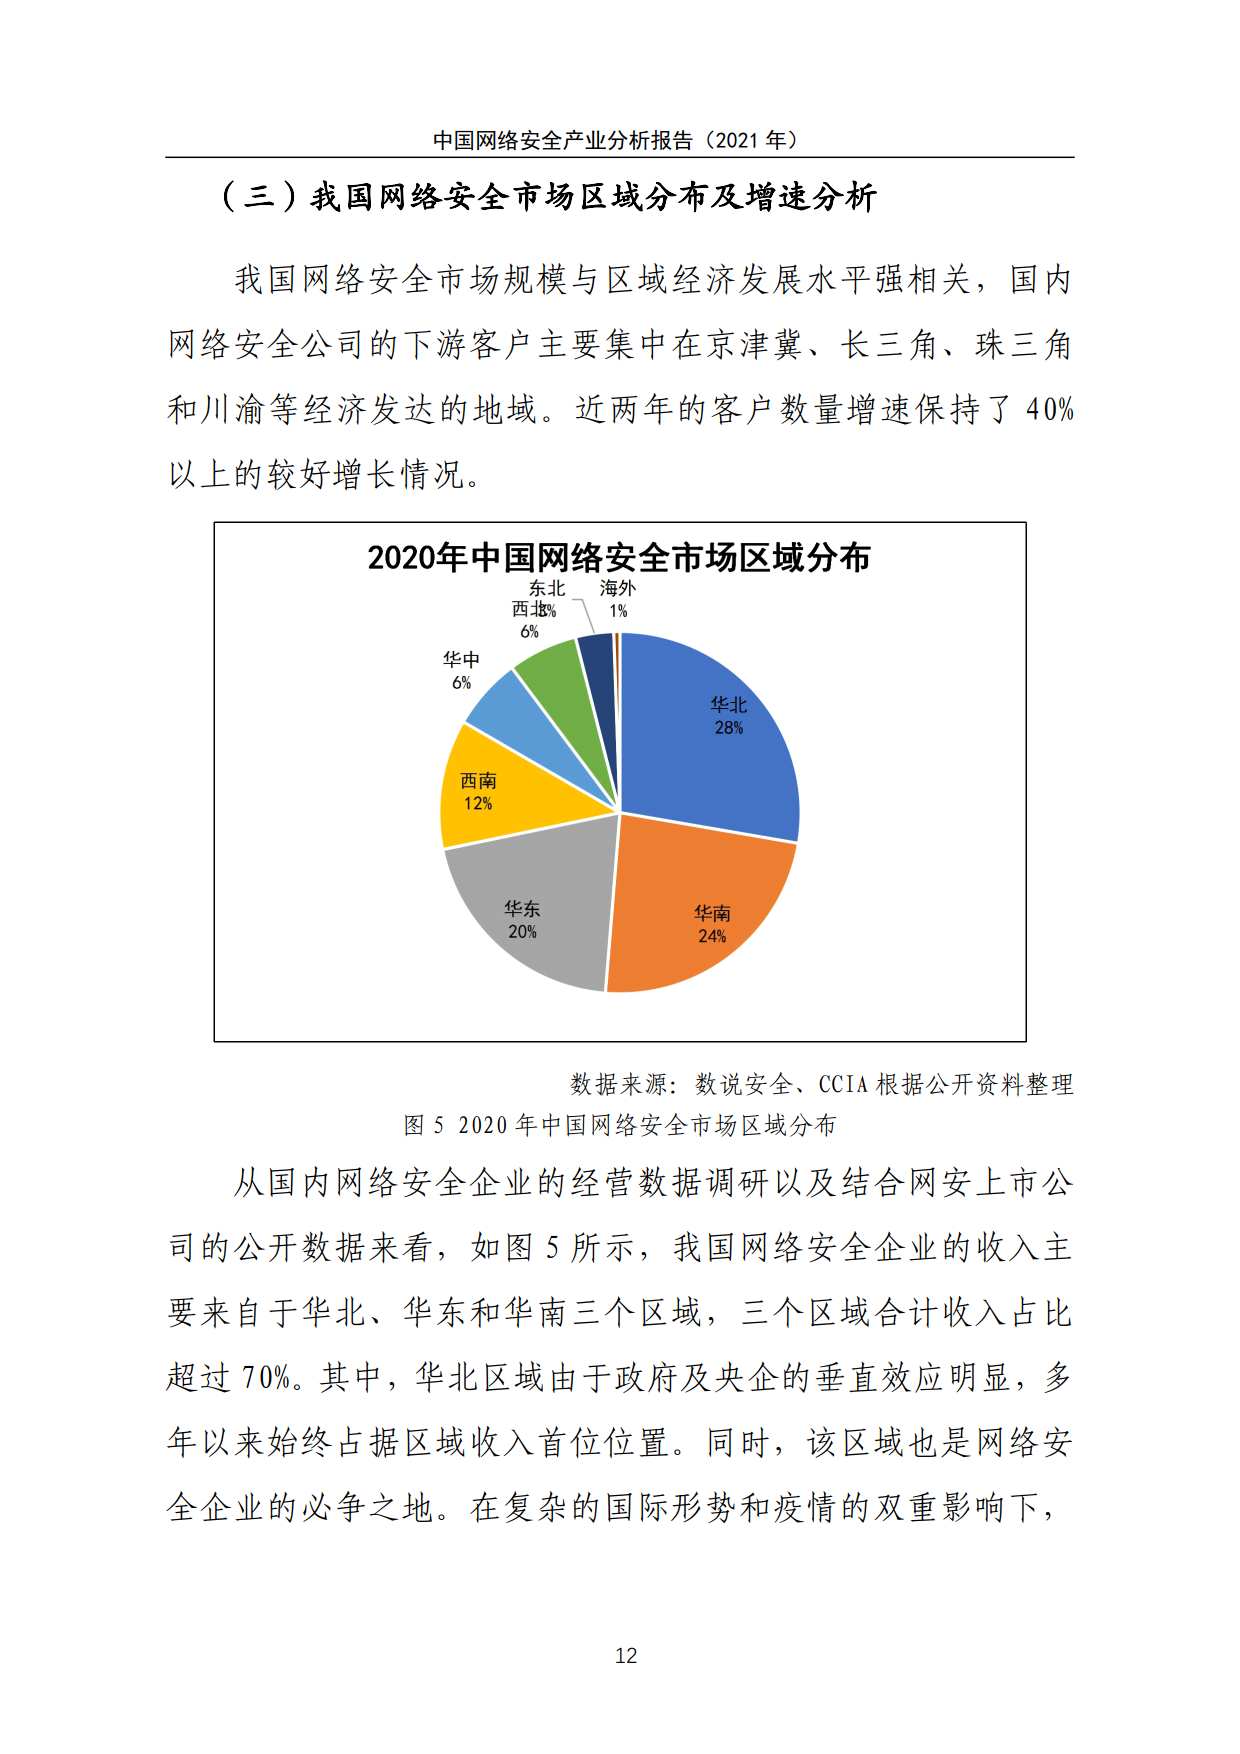 《中国网络安全产业分析报告（2021年）》全文发布